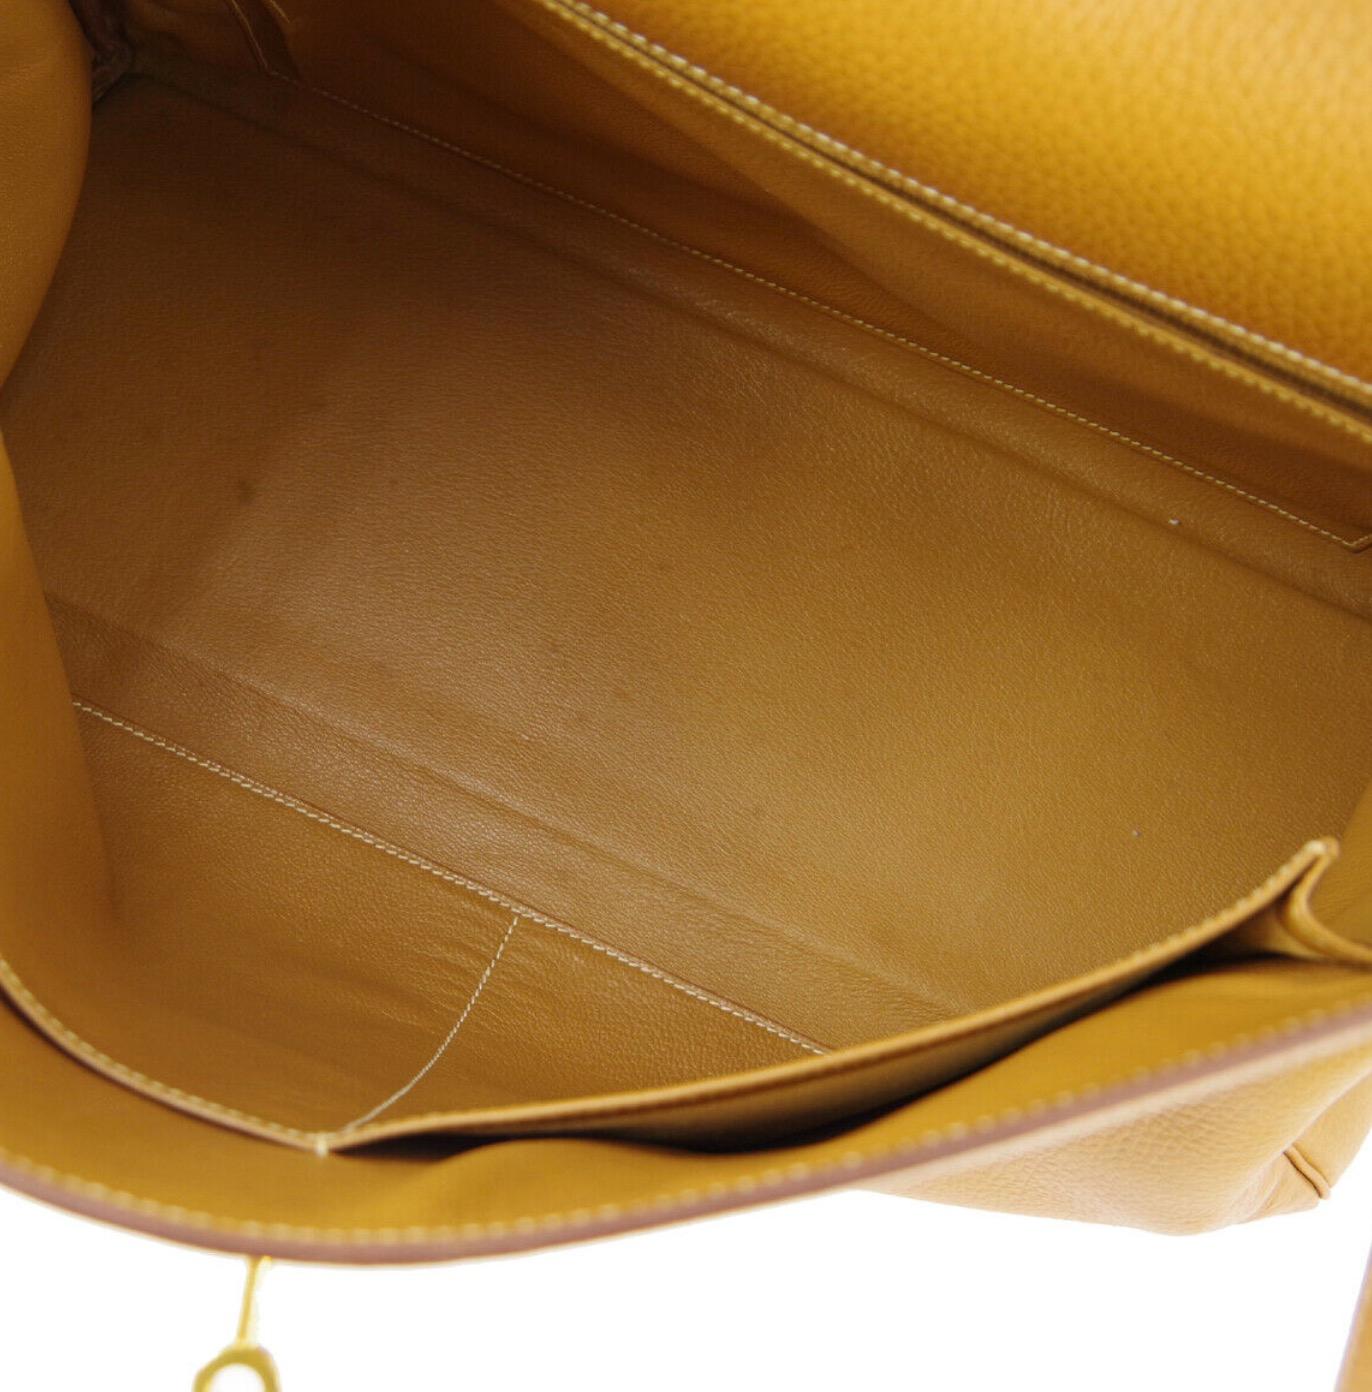 Hermes Kelly 40 Mustard Leather Top Handle Satchel Carryall Tote Flap Bag 2